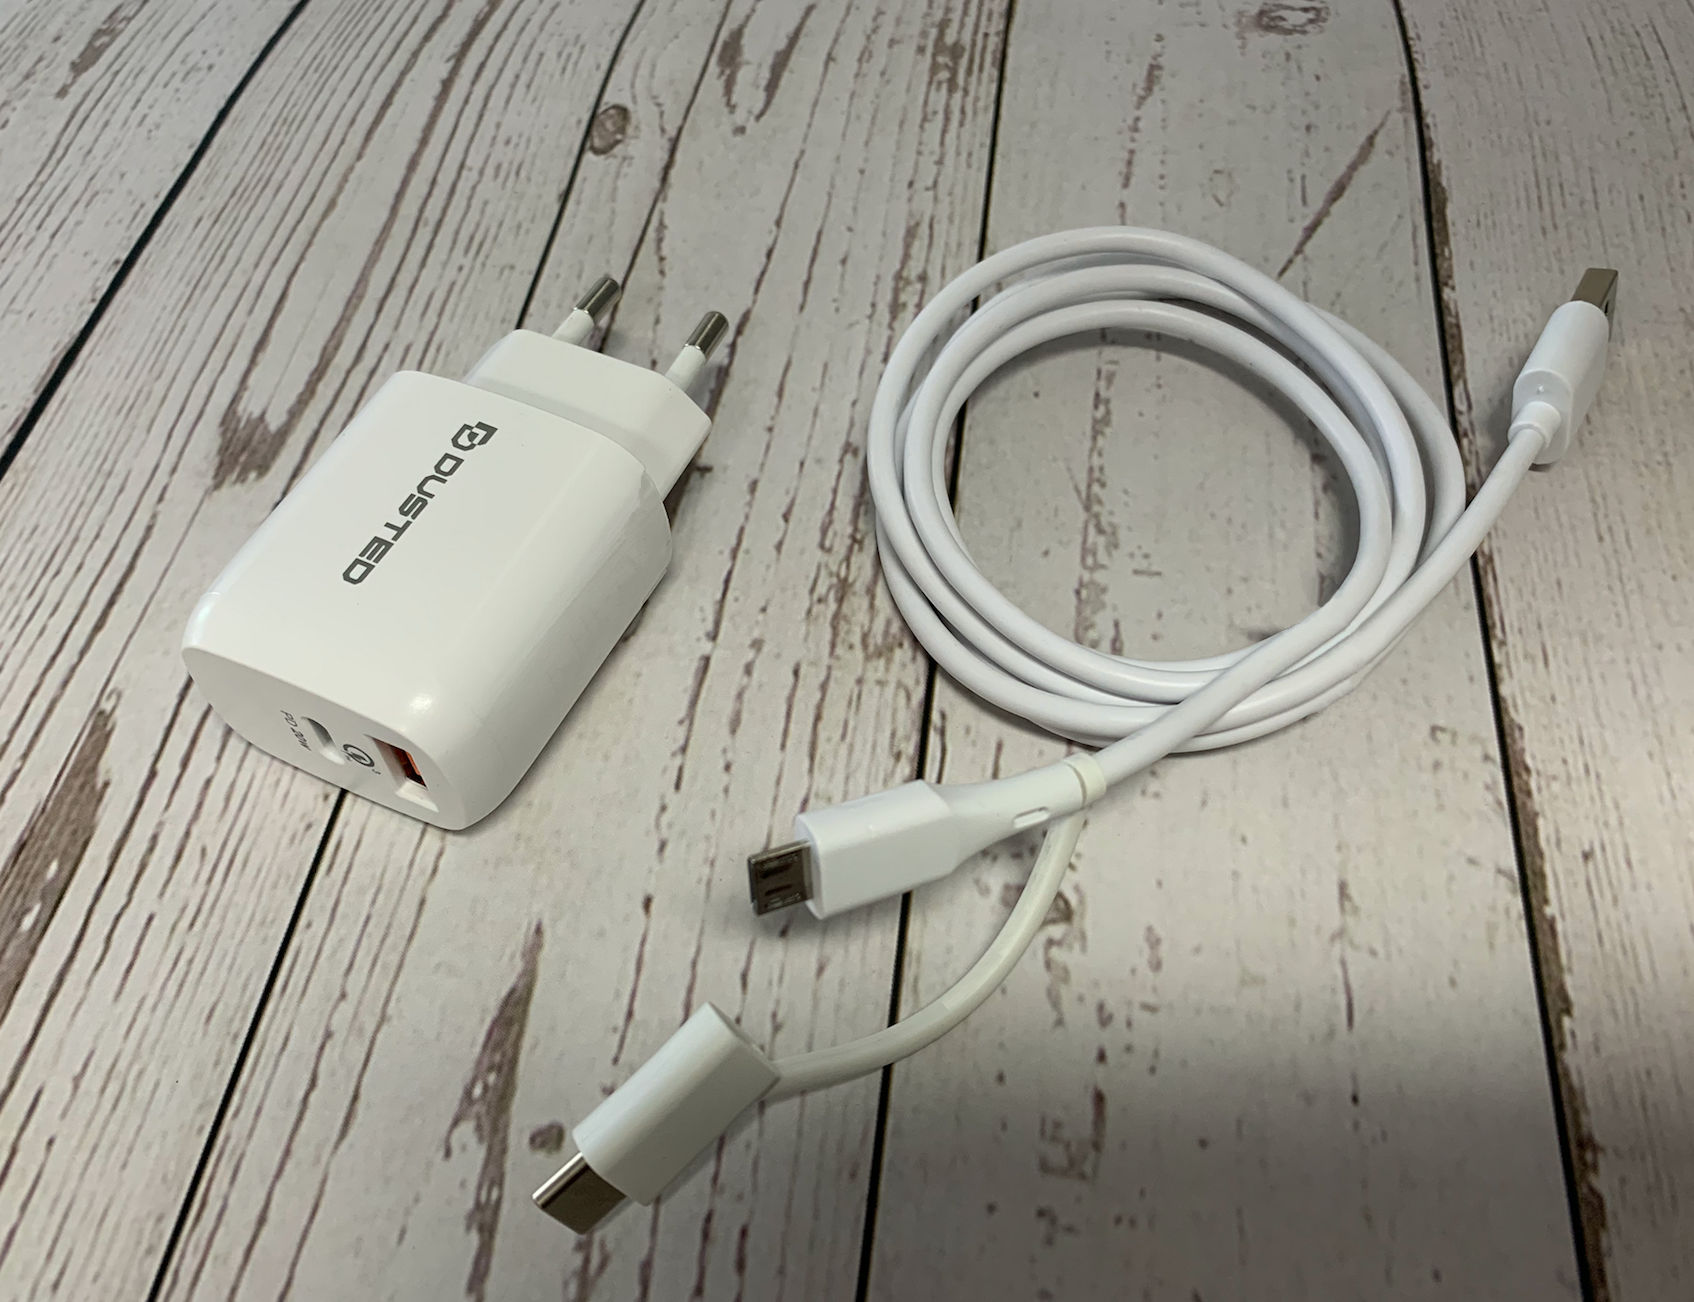  - Cargador USB-C PD Carga rapida 20W para iPhone y iPad Dusted con Cable 2en1 Blanco 3